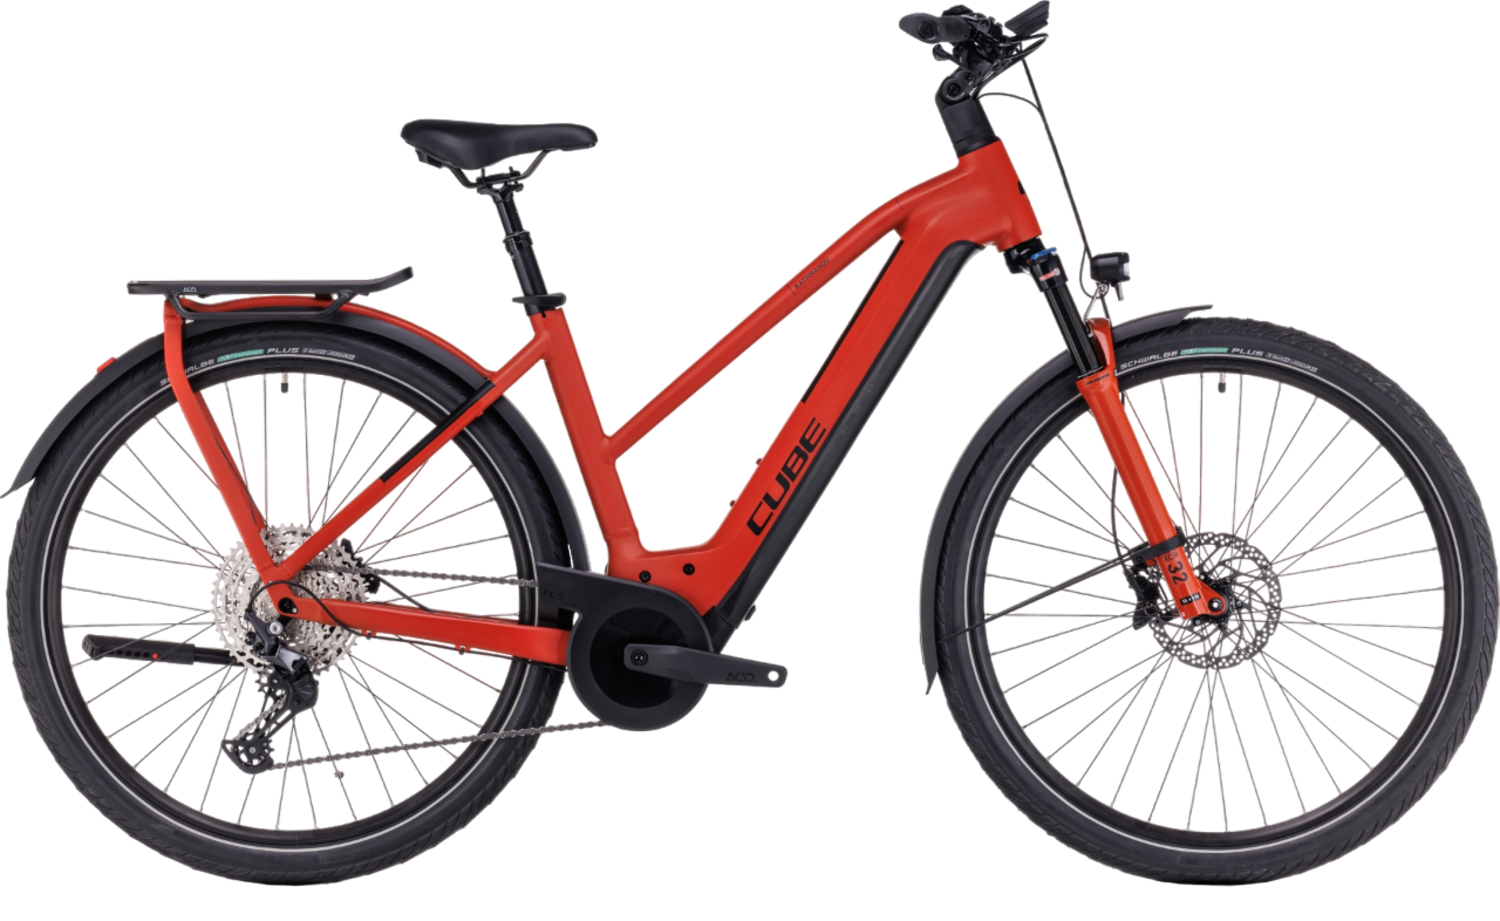 Accurat Protection de cadre pour batteries de vélo électriques 54cm 